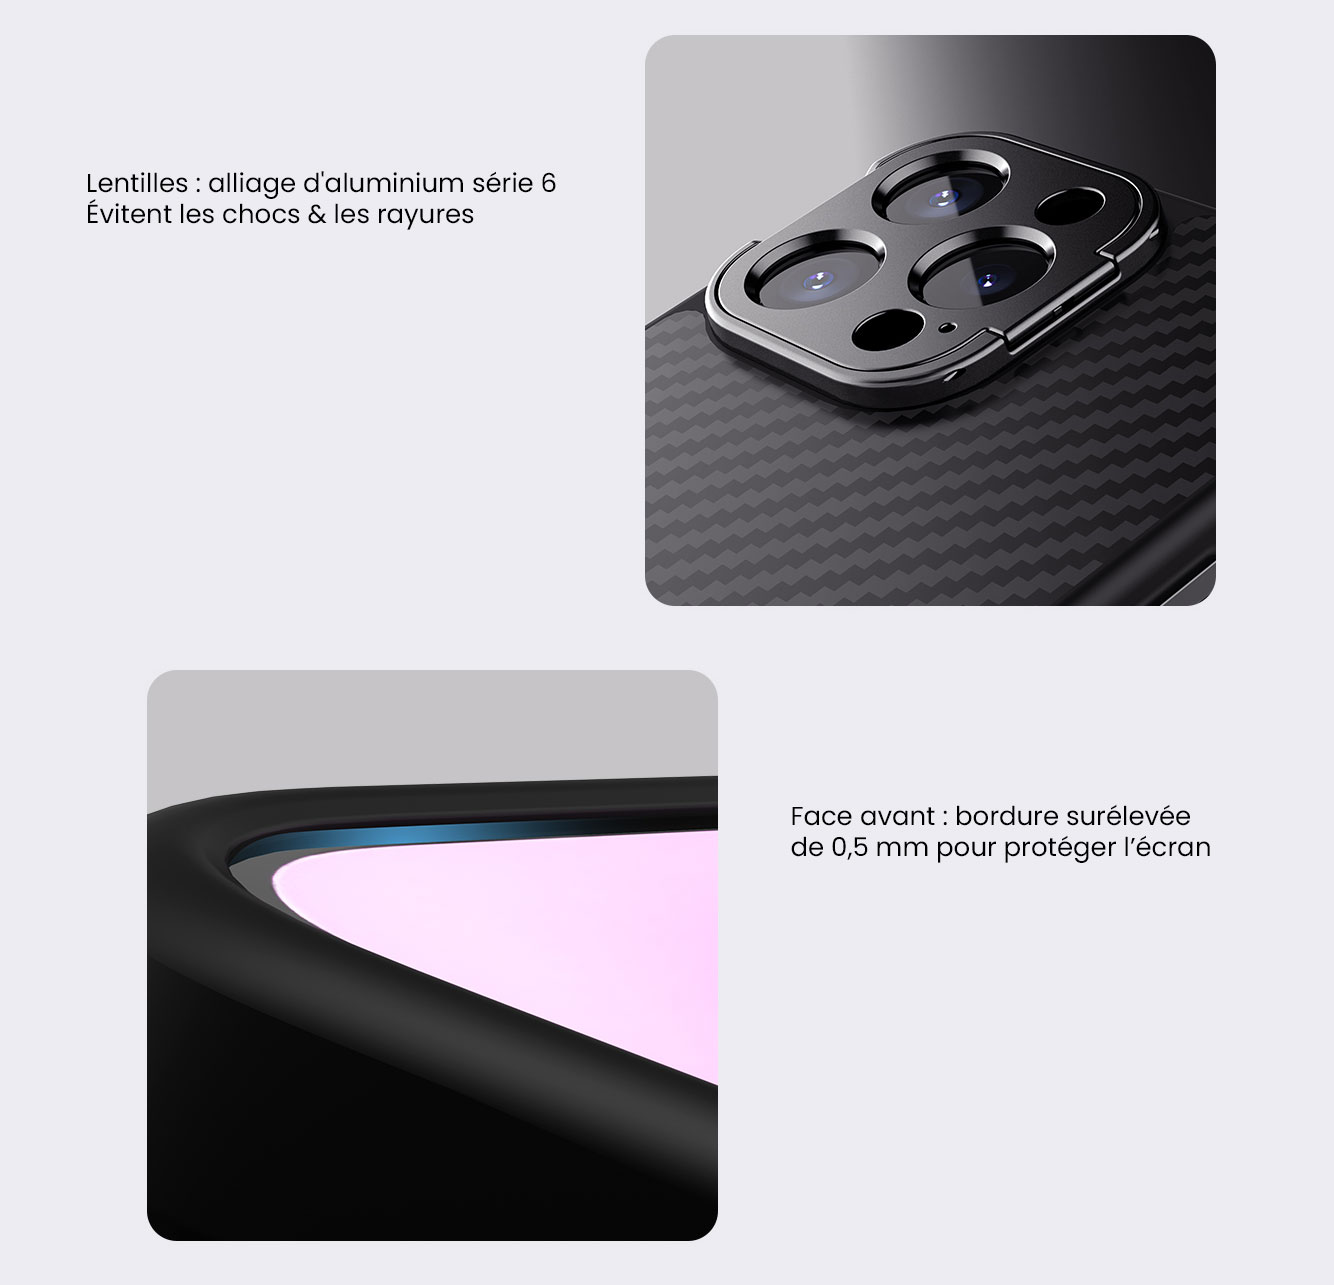 Coque MagSafe NILLKIN CarboProp En Fibre D'Aramide (Kevlar) pour iPhone 14 Pro Max